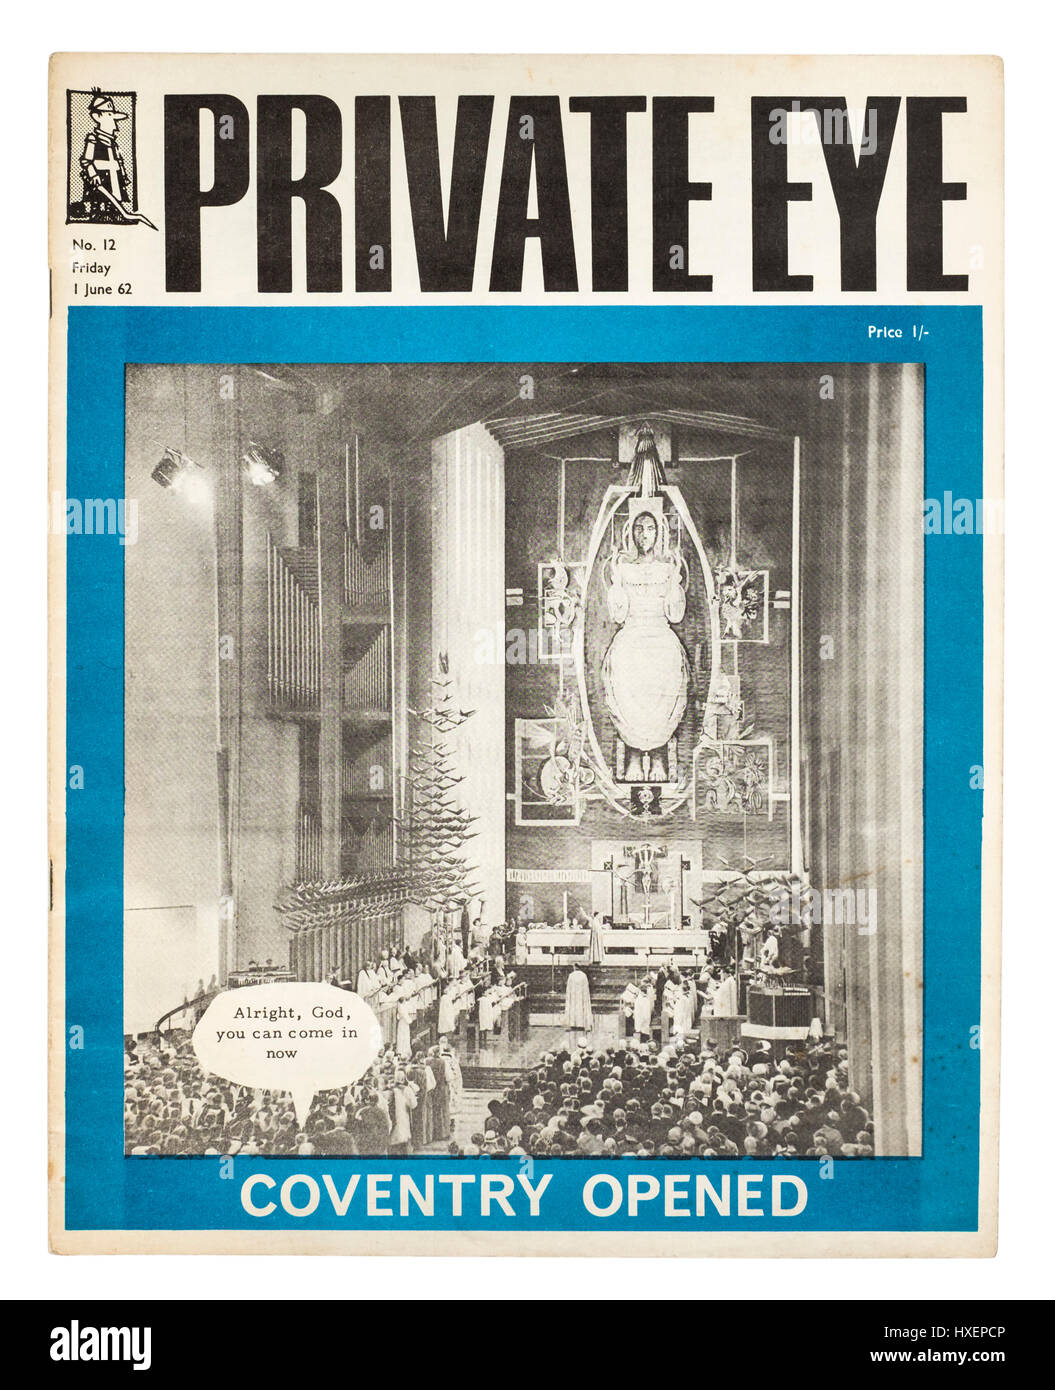 Prima rara copia di occhio privato Magazine (edizione n. 12 in data venerdì 1 giugno 1962) con l'apertura della nuova Cattedrale Coventry sul coperchio anteriore. Foto Stock